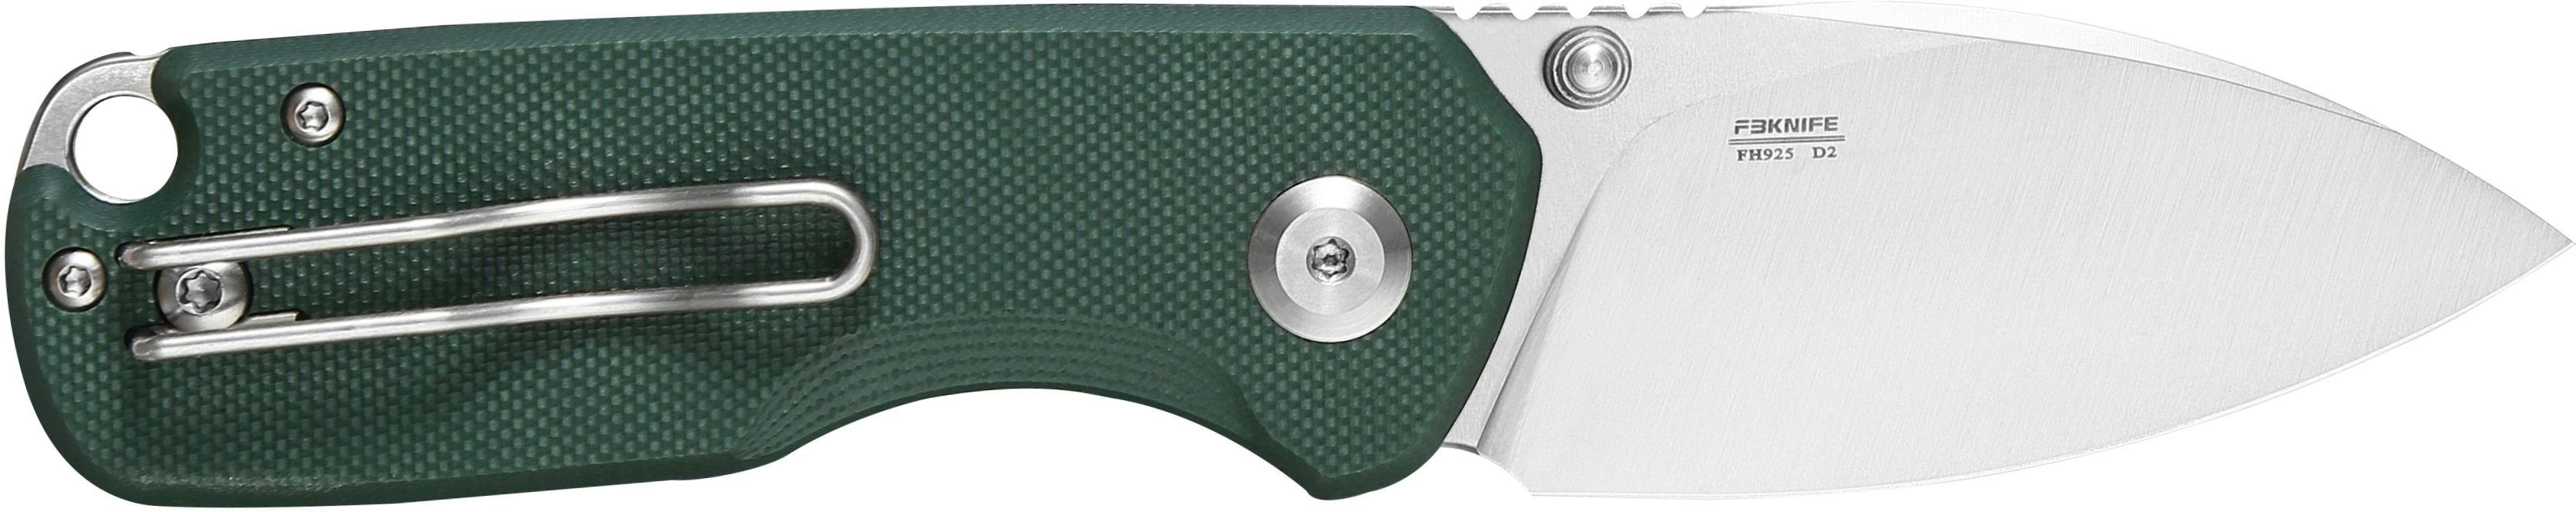 Нож складной Firebird FH925-GB сине-зеленый фото 2